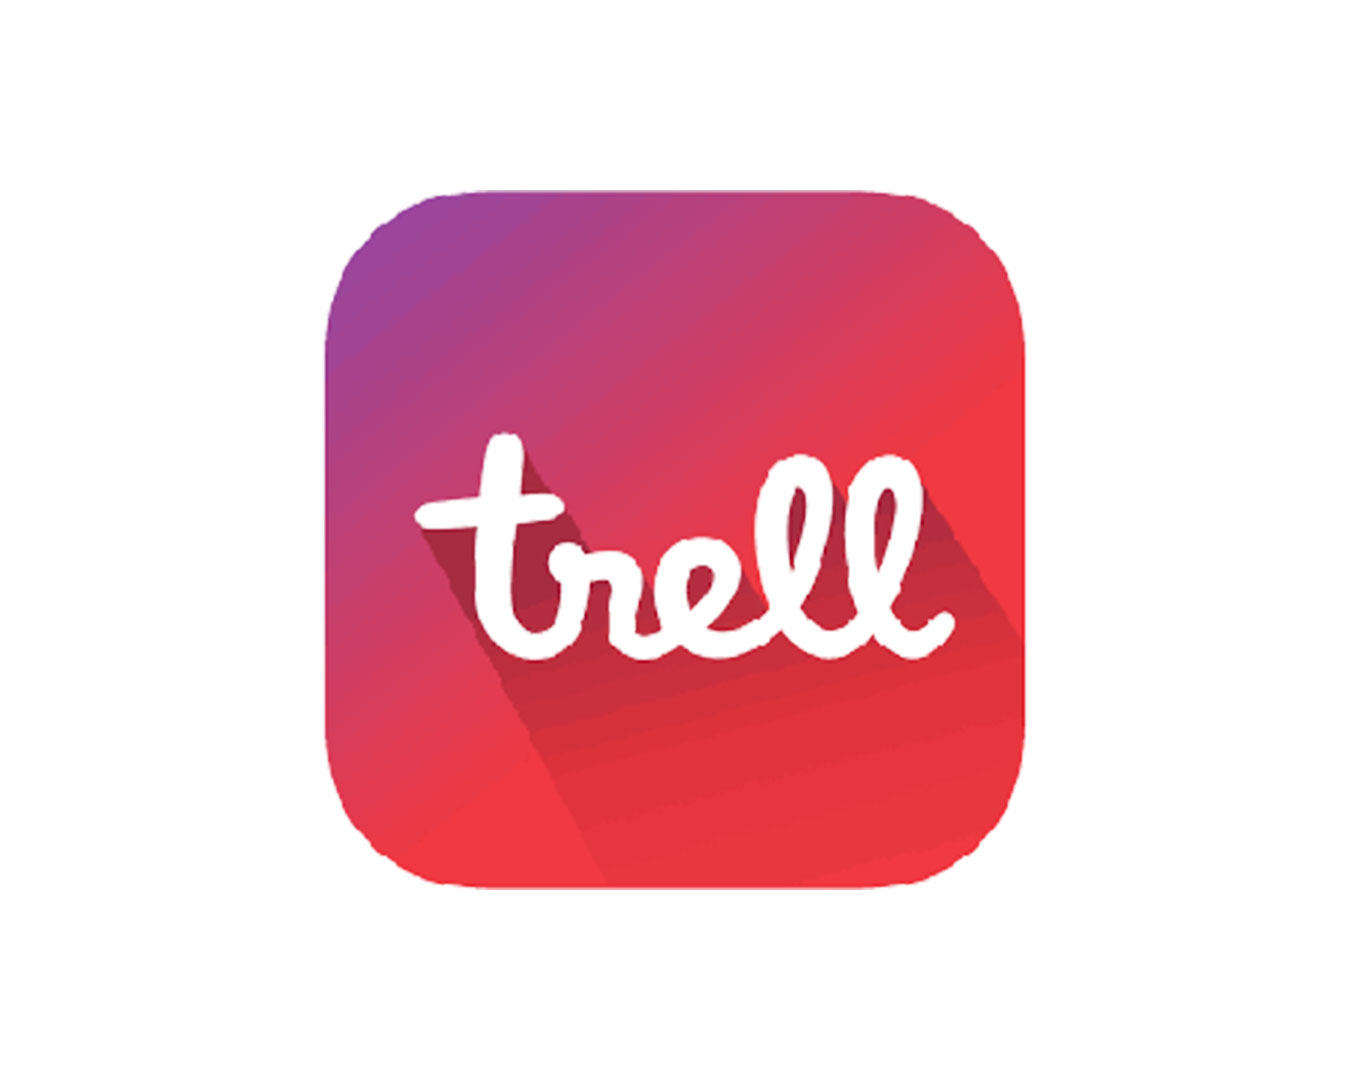 short video apps - Trell